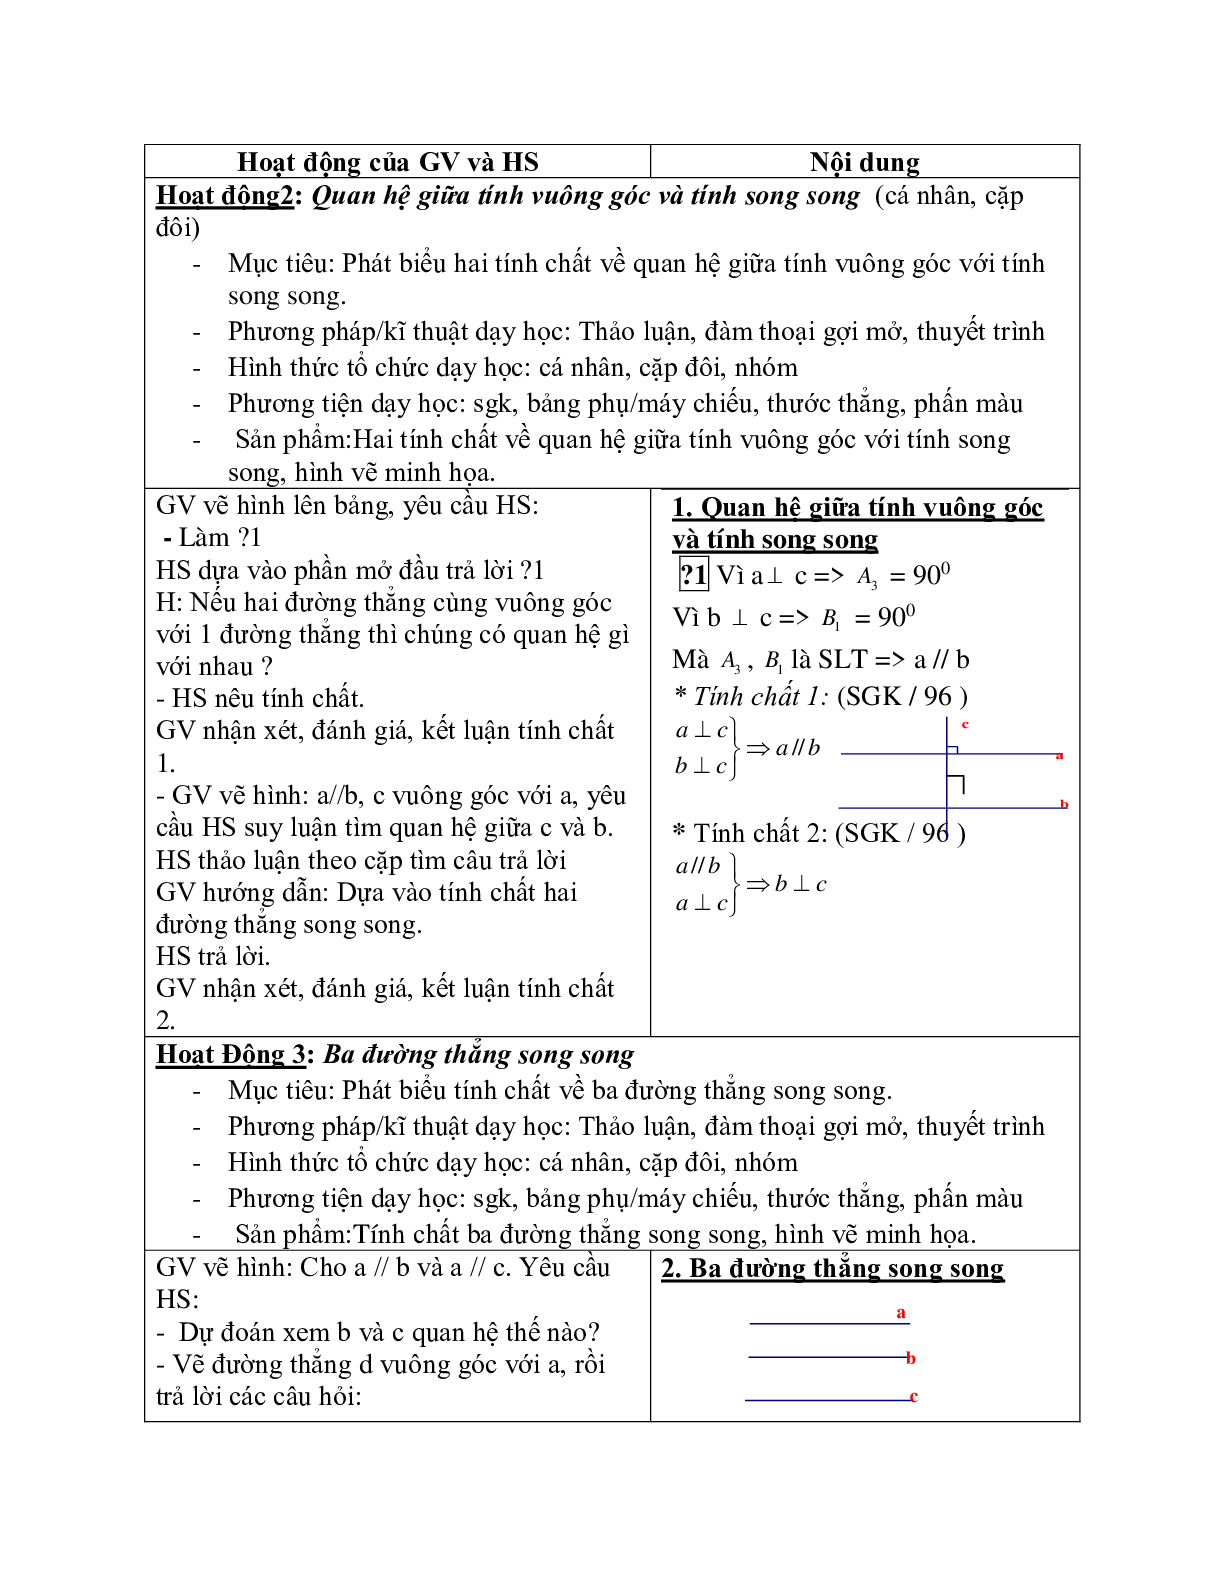 Giáo án Toán học 7 bài 6: Từ vuông góc đến song song chuẩn nhất (trang 2)